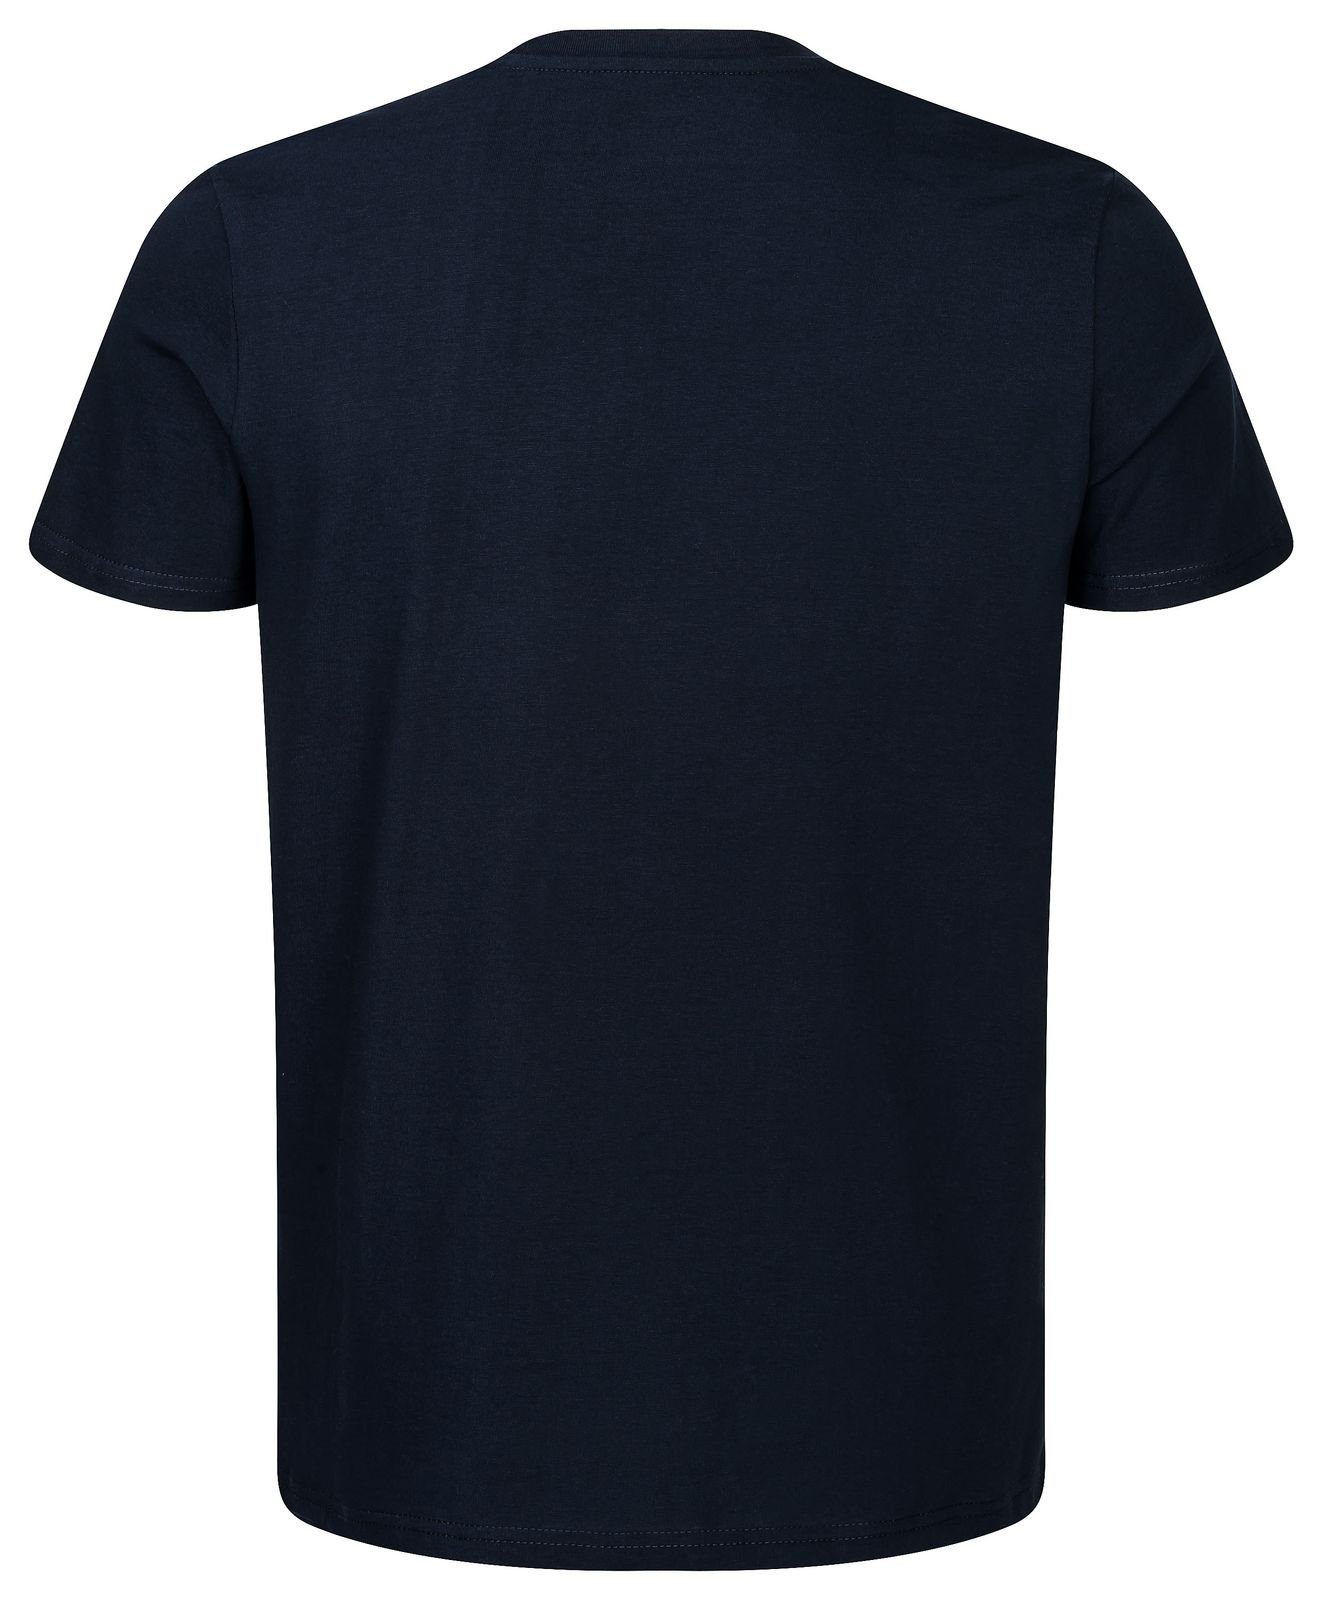 Gradnetz T-Shirt basic fair leather Biobaumwolle & unisex dunkelblau nachhaltig 100